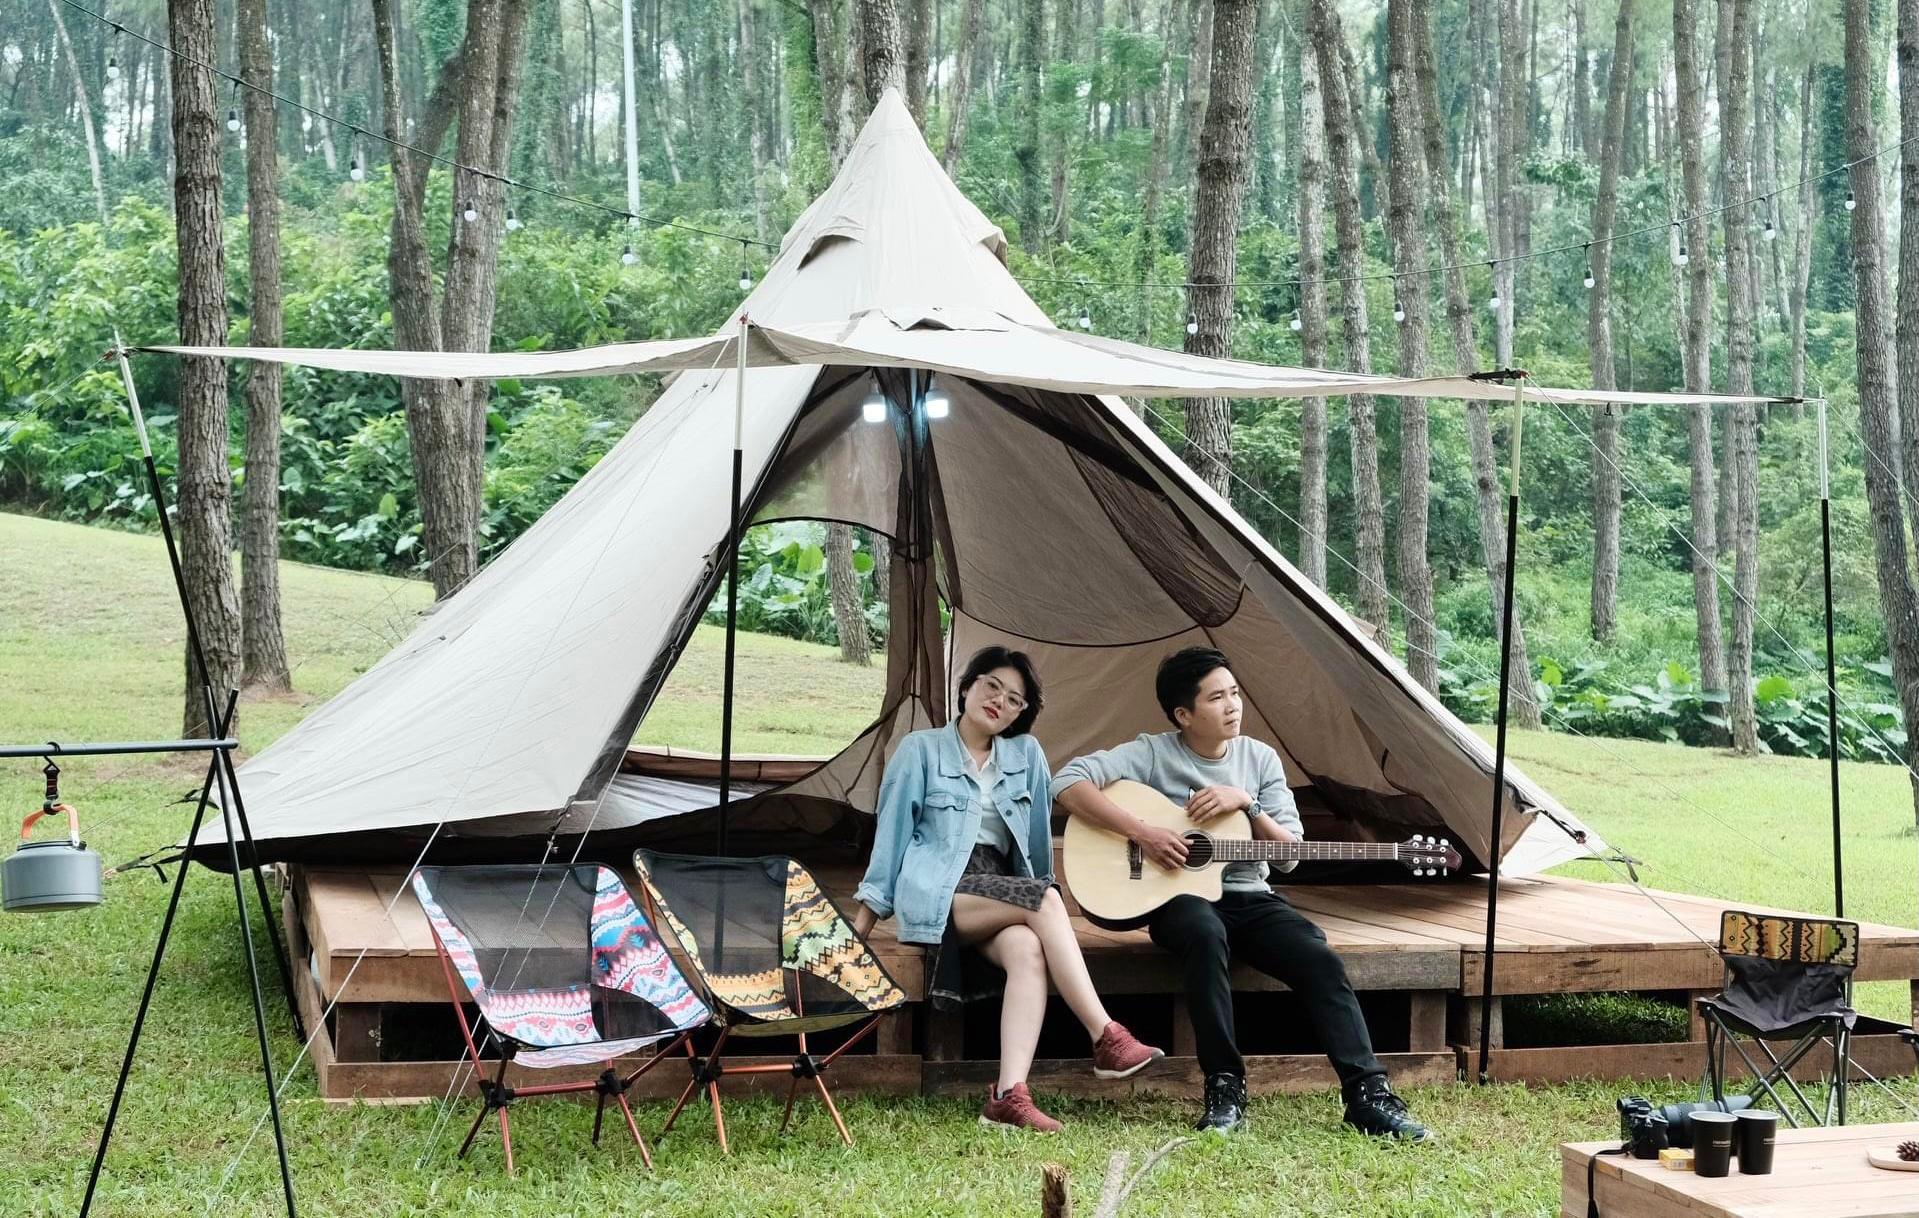 Cắm trại chính là một hoạt động du lịch thú vị, giúp mọi người tận hưởng không khí trong lành của thiên nhiên